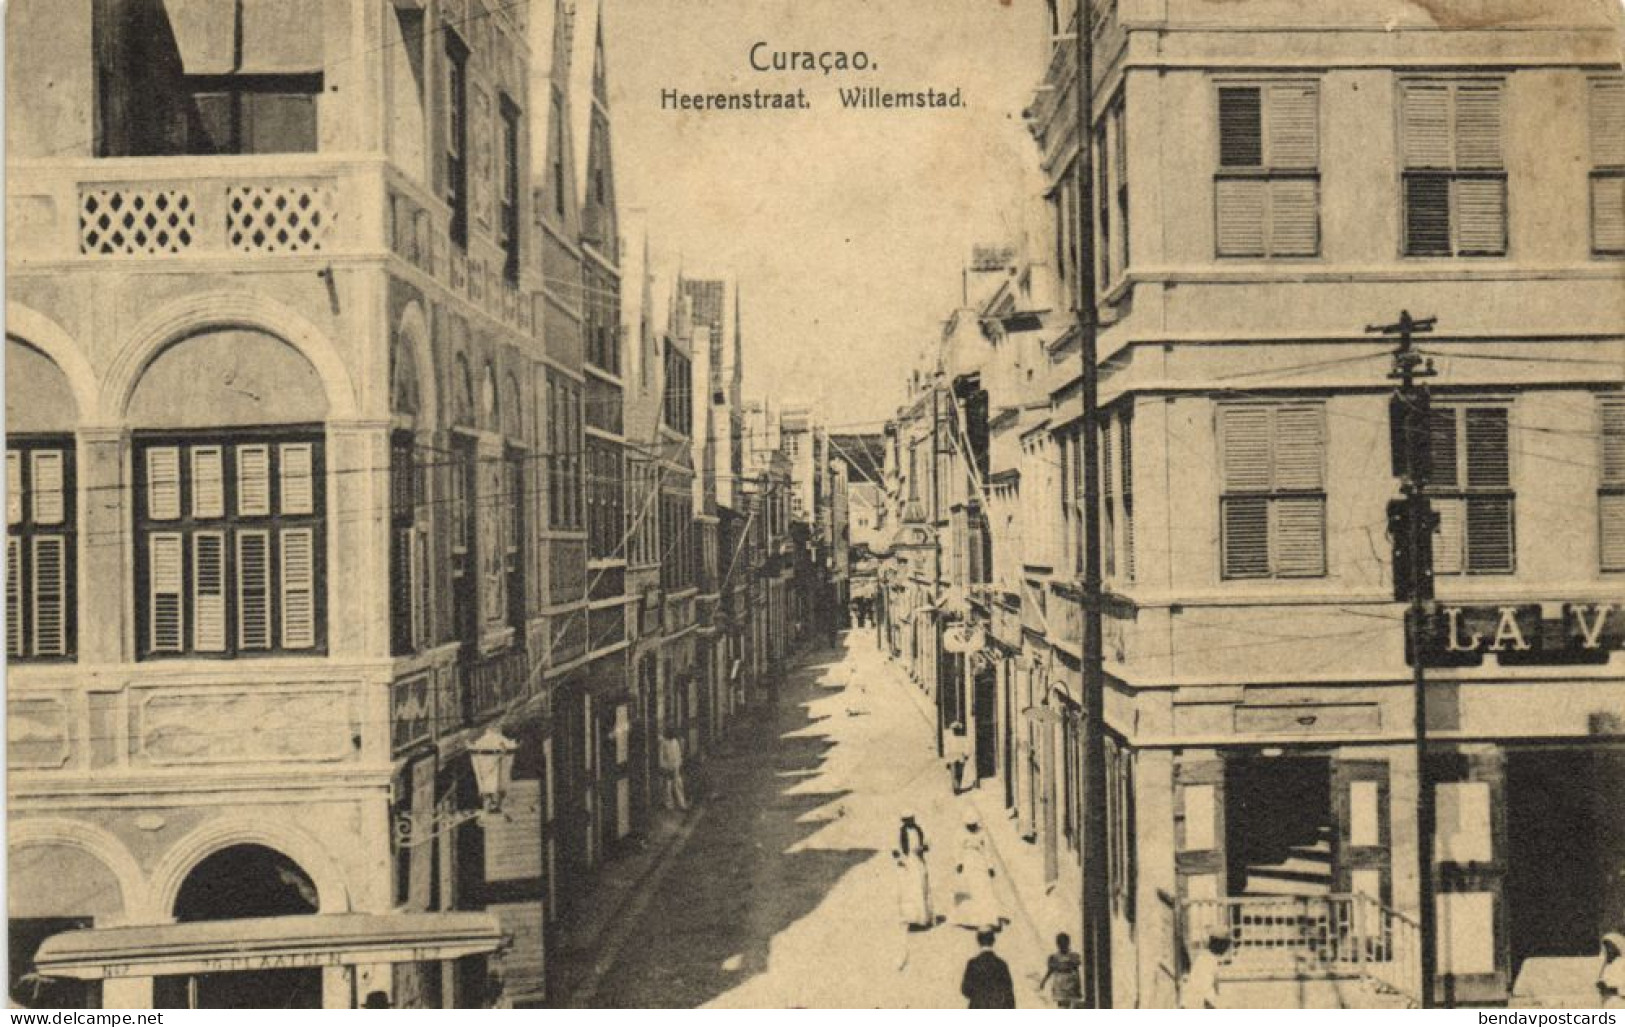 Curacao, D.W.I., WILLEMSTAD, Heerenstraat (1910s) Postcard - Curaçao